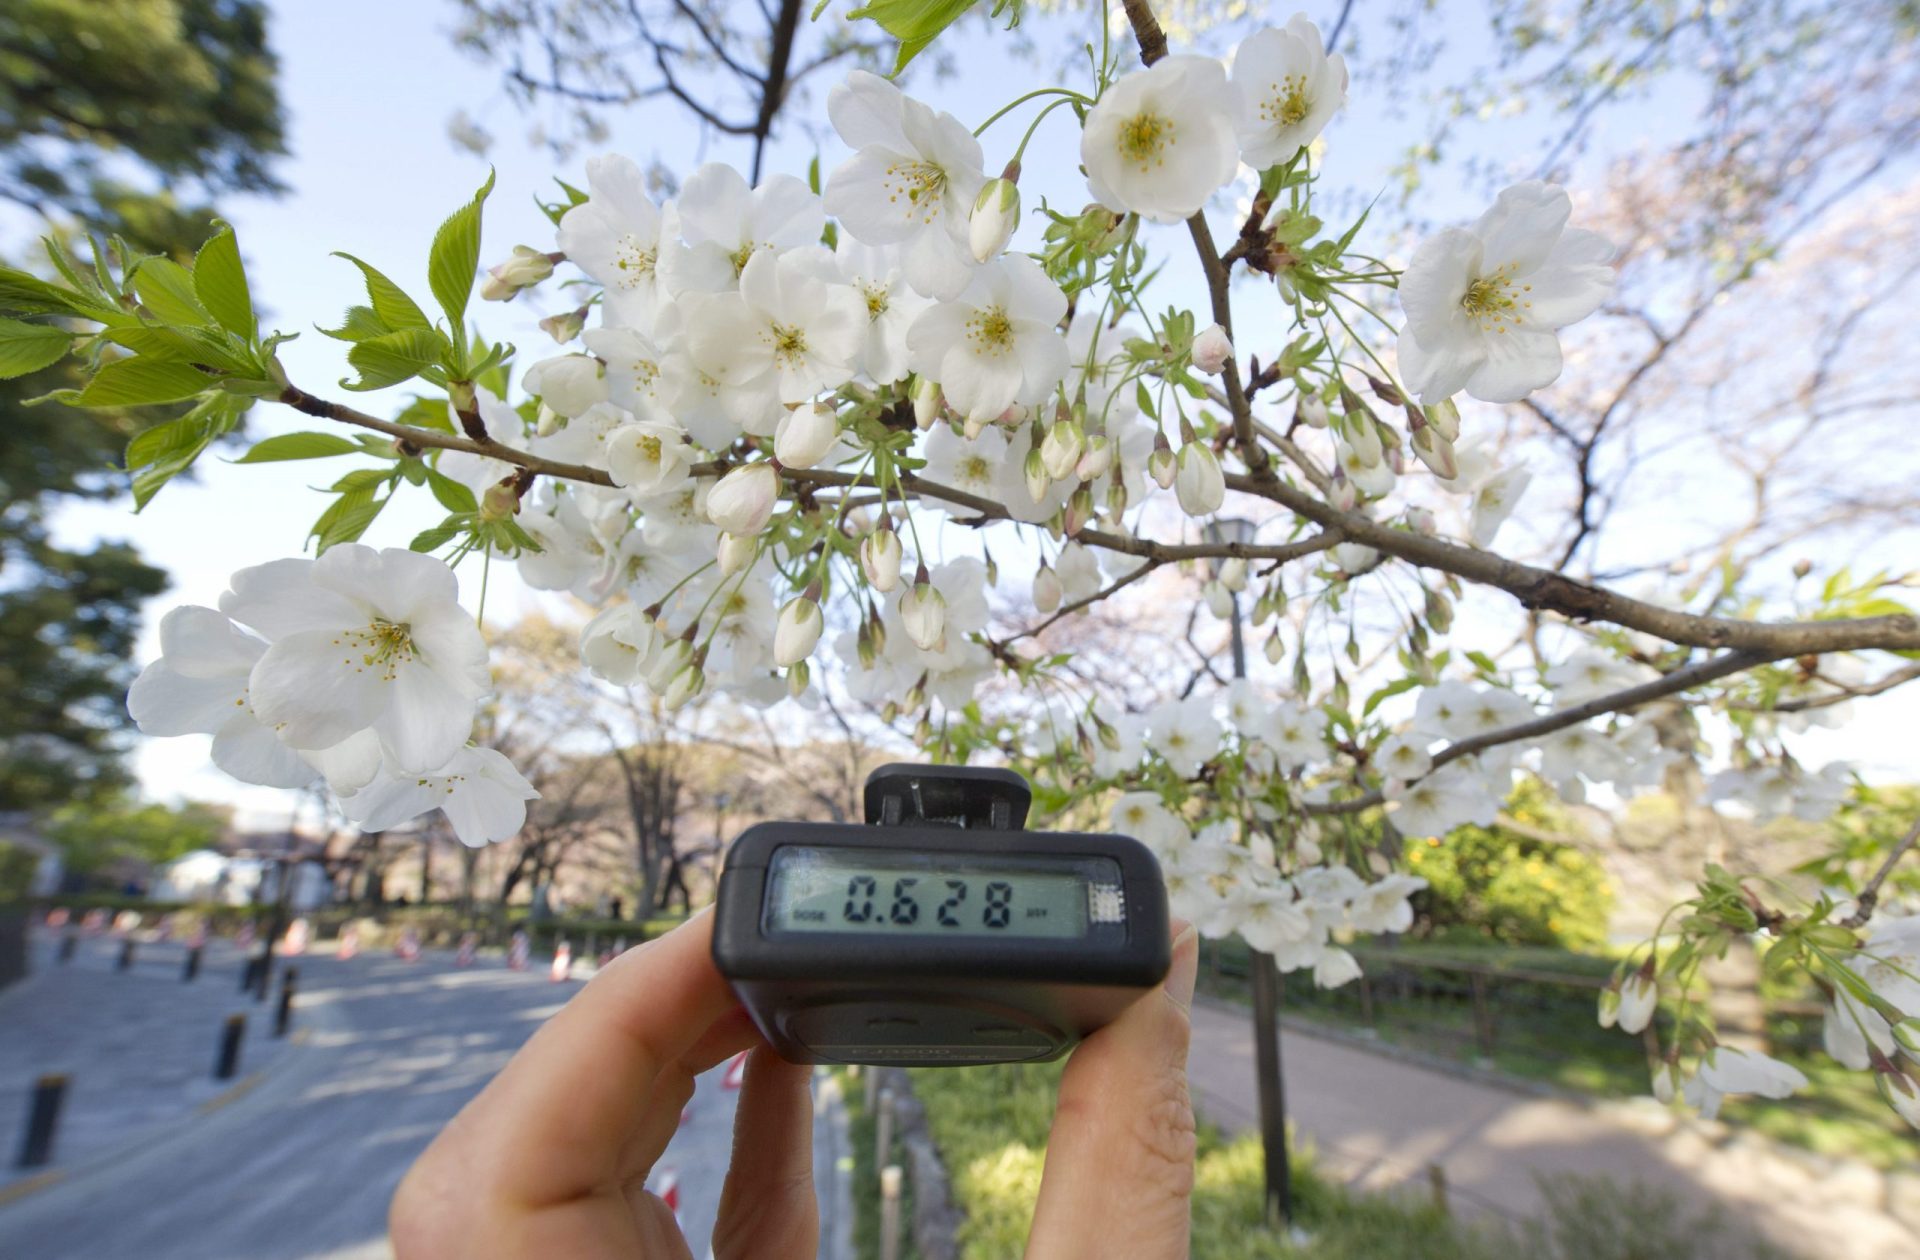 Recurso de archivo. Un medidor de radiación muestra el índice de contaminación en un cerezo en flor en una foto de abril de 2011, tras el desastre nuclear de Fukushima (Japón).